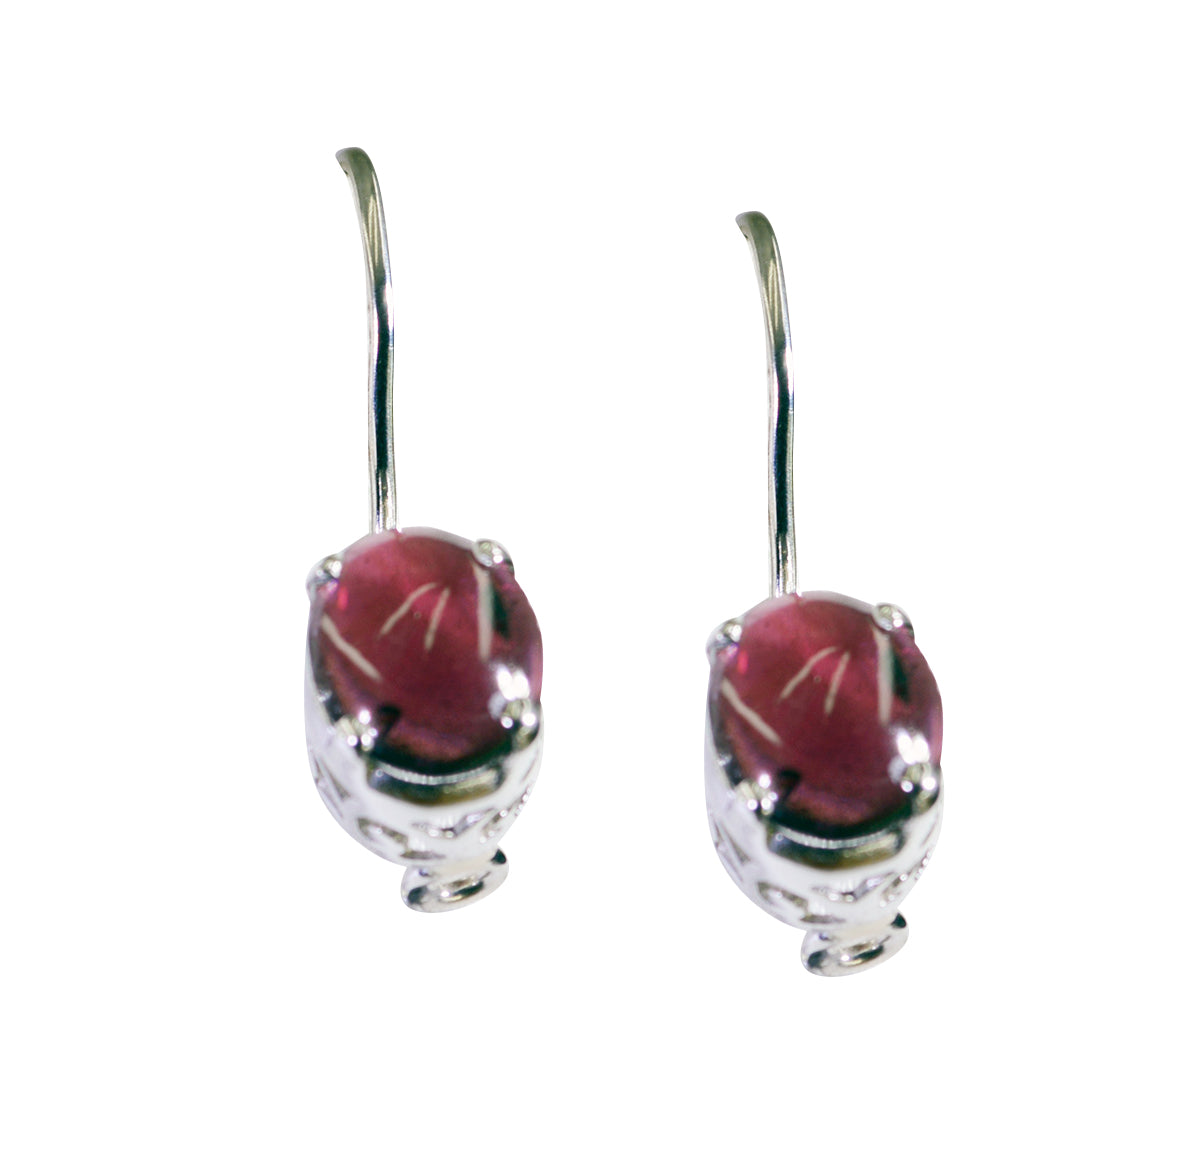 Riyo Good Gemstones oval Cabochon Red Garnet Silver Earring gift for good Friday